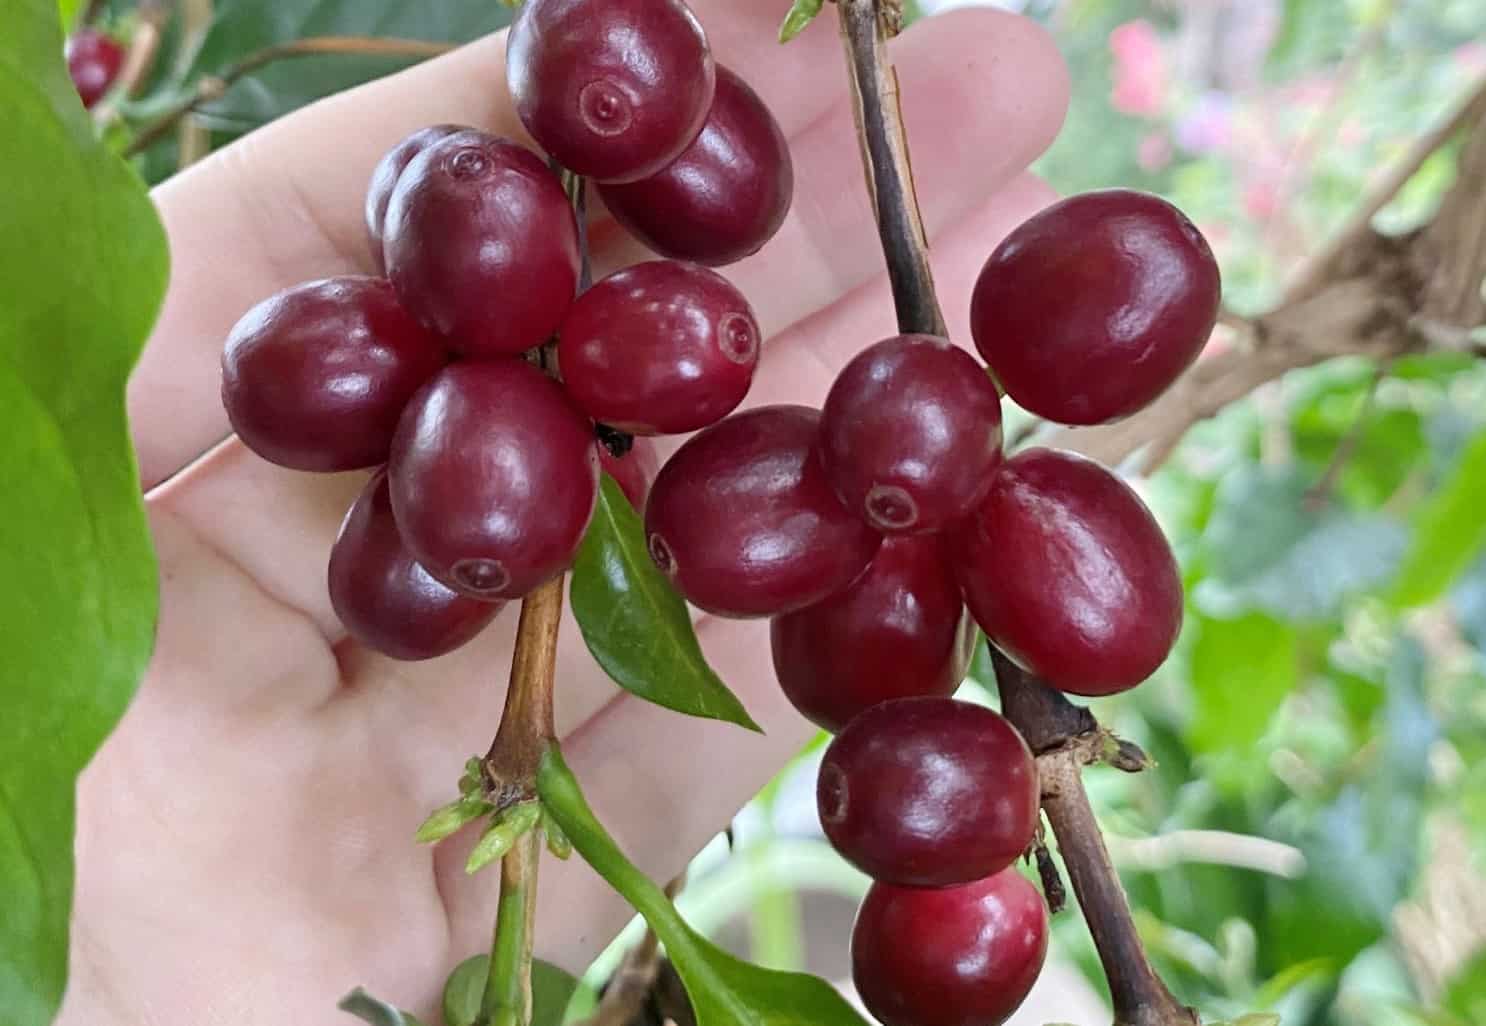 ripe coffee cherries growing on a coffee tree